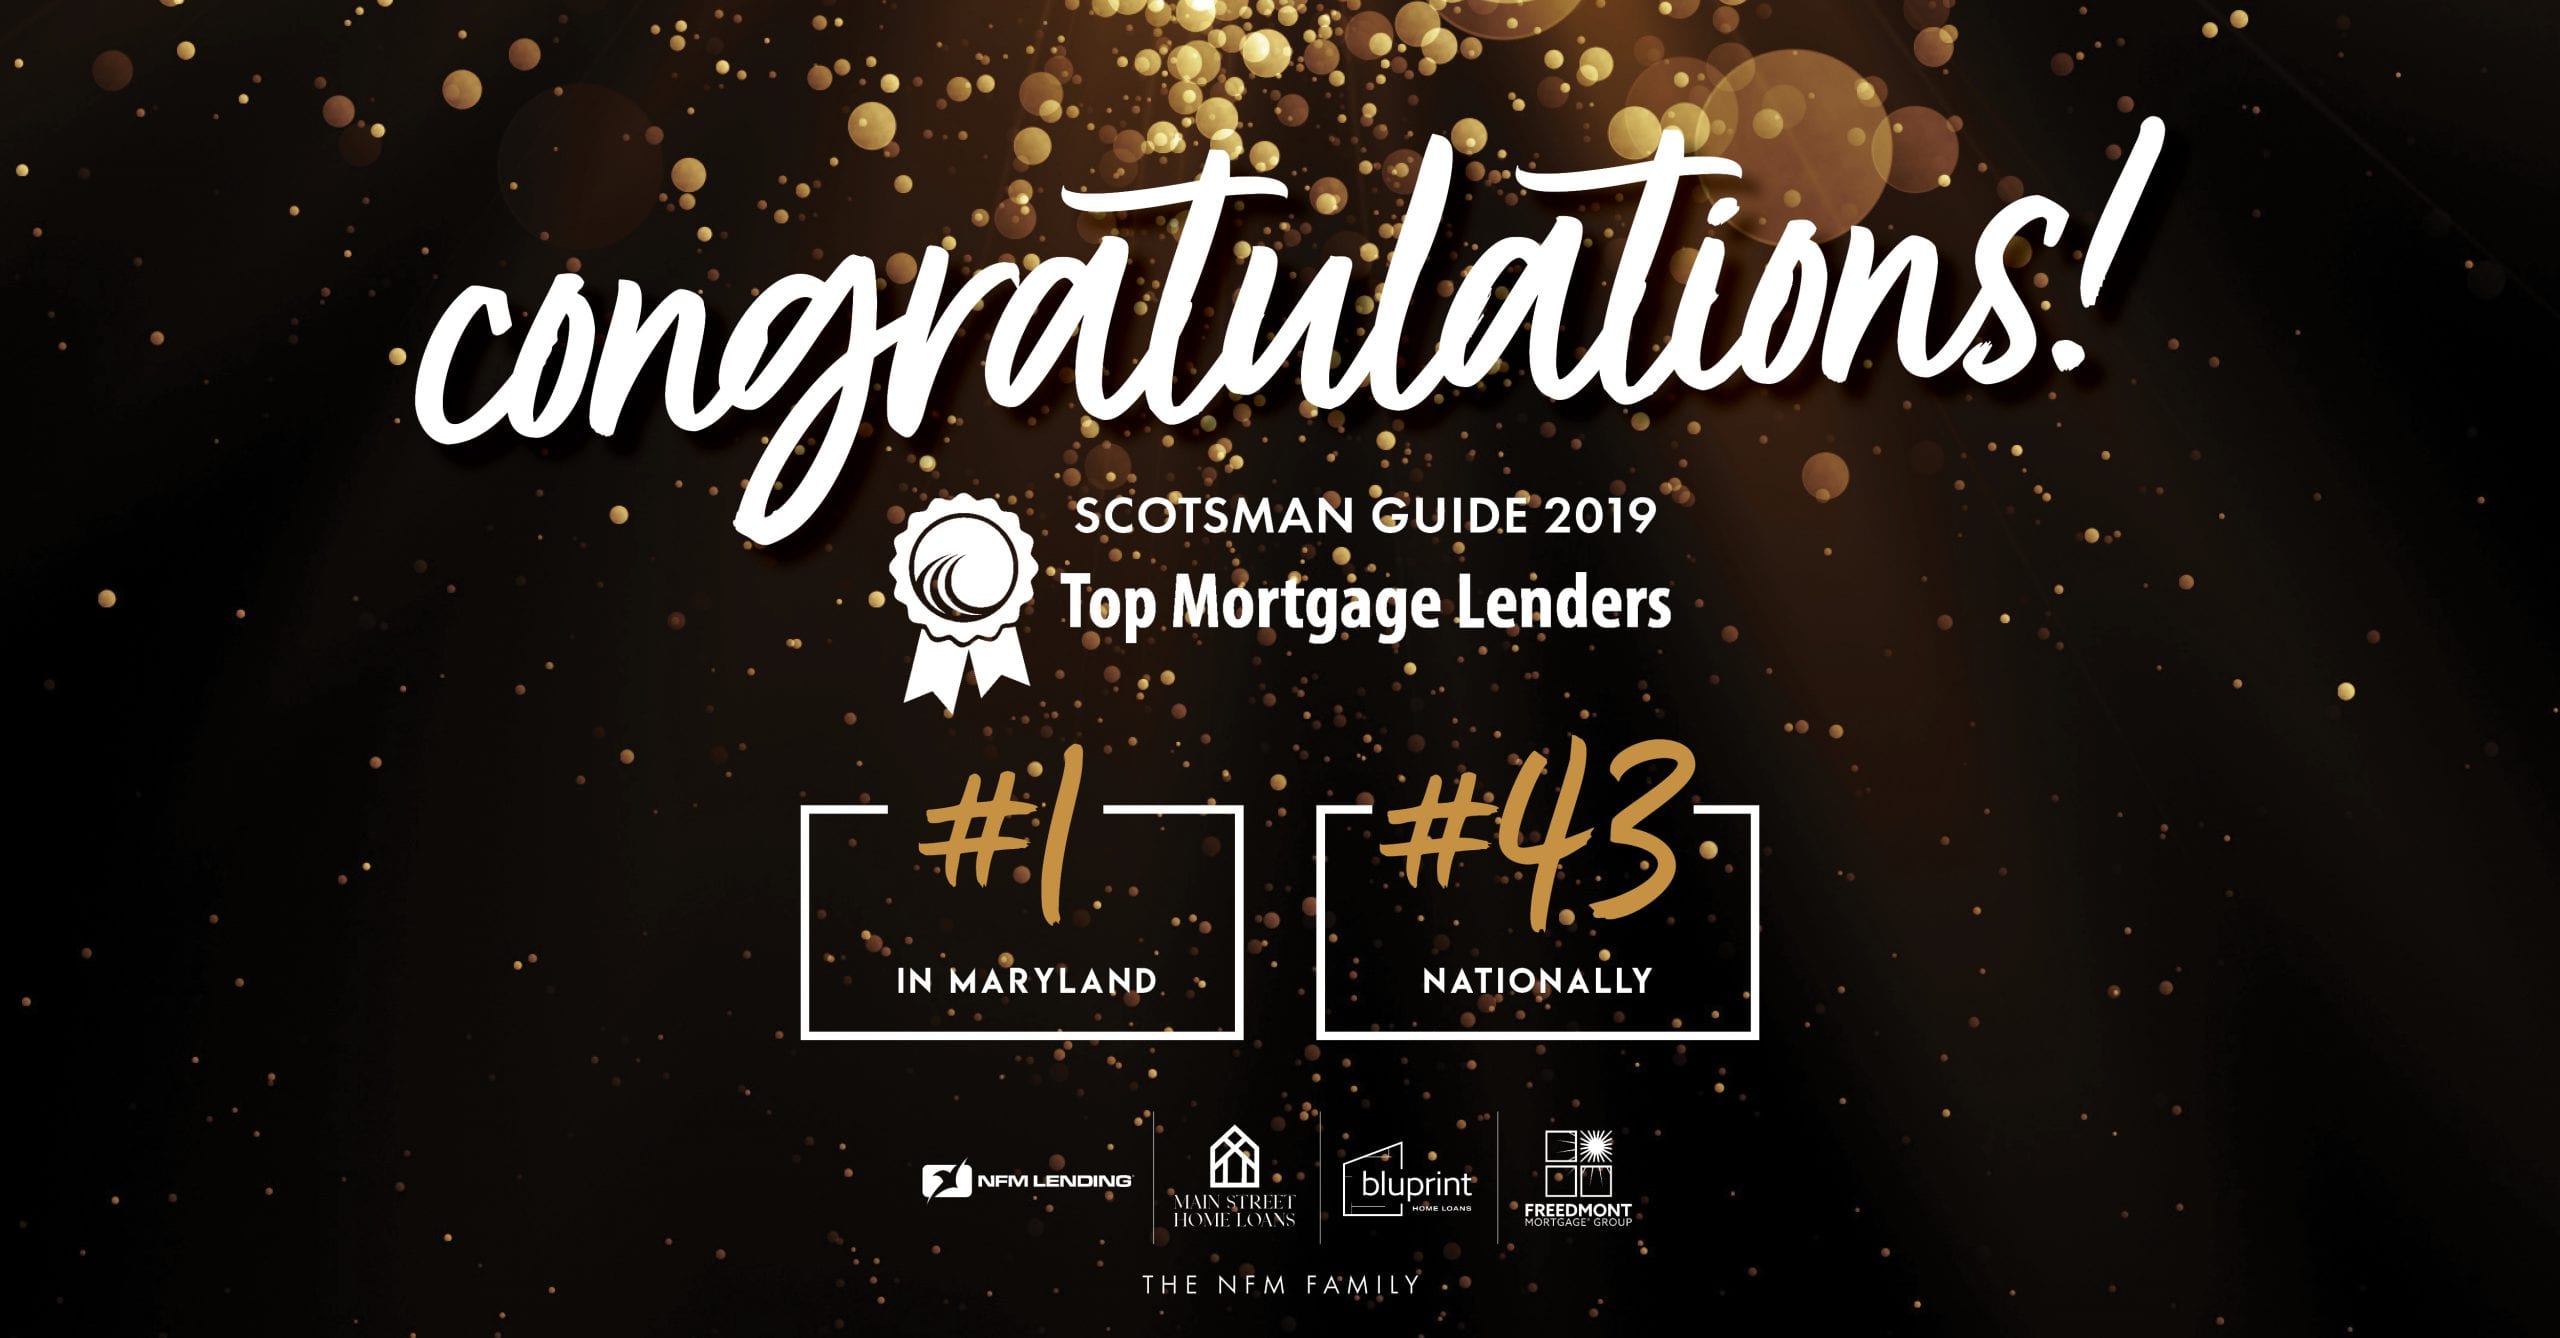 Top Mortgage Lenders 2019